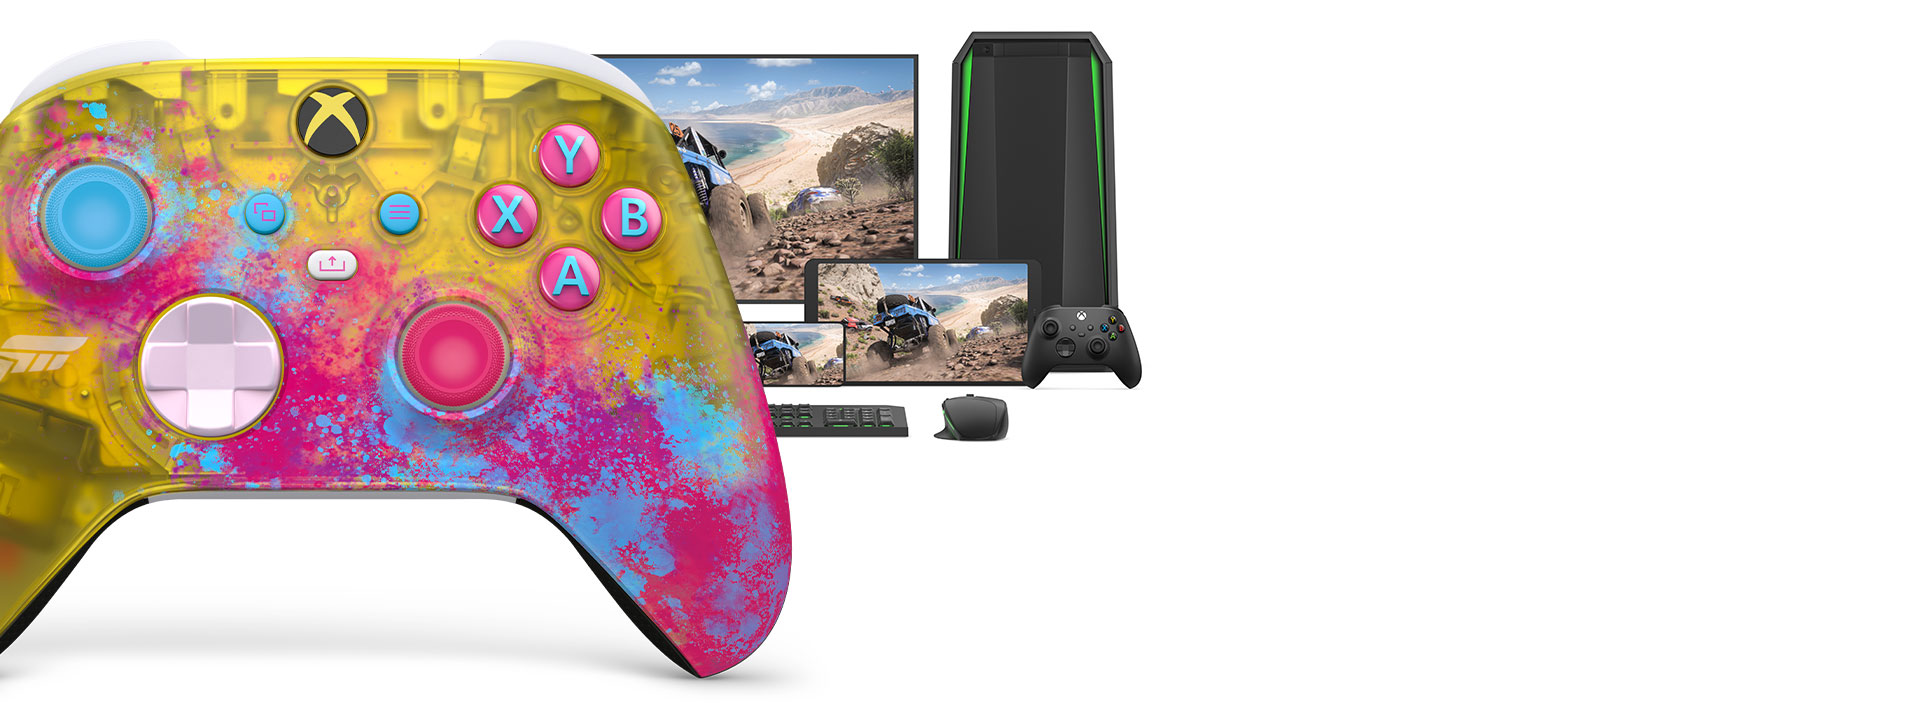 Trådløs Xbox-controller Forza Horizon 5 med en computer, tv og en Xbox Series S